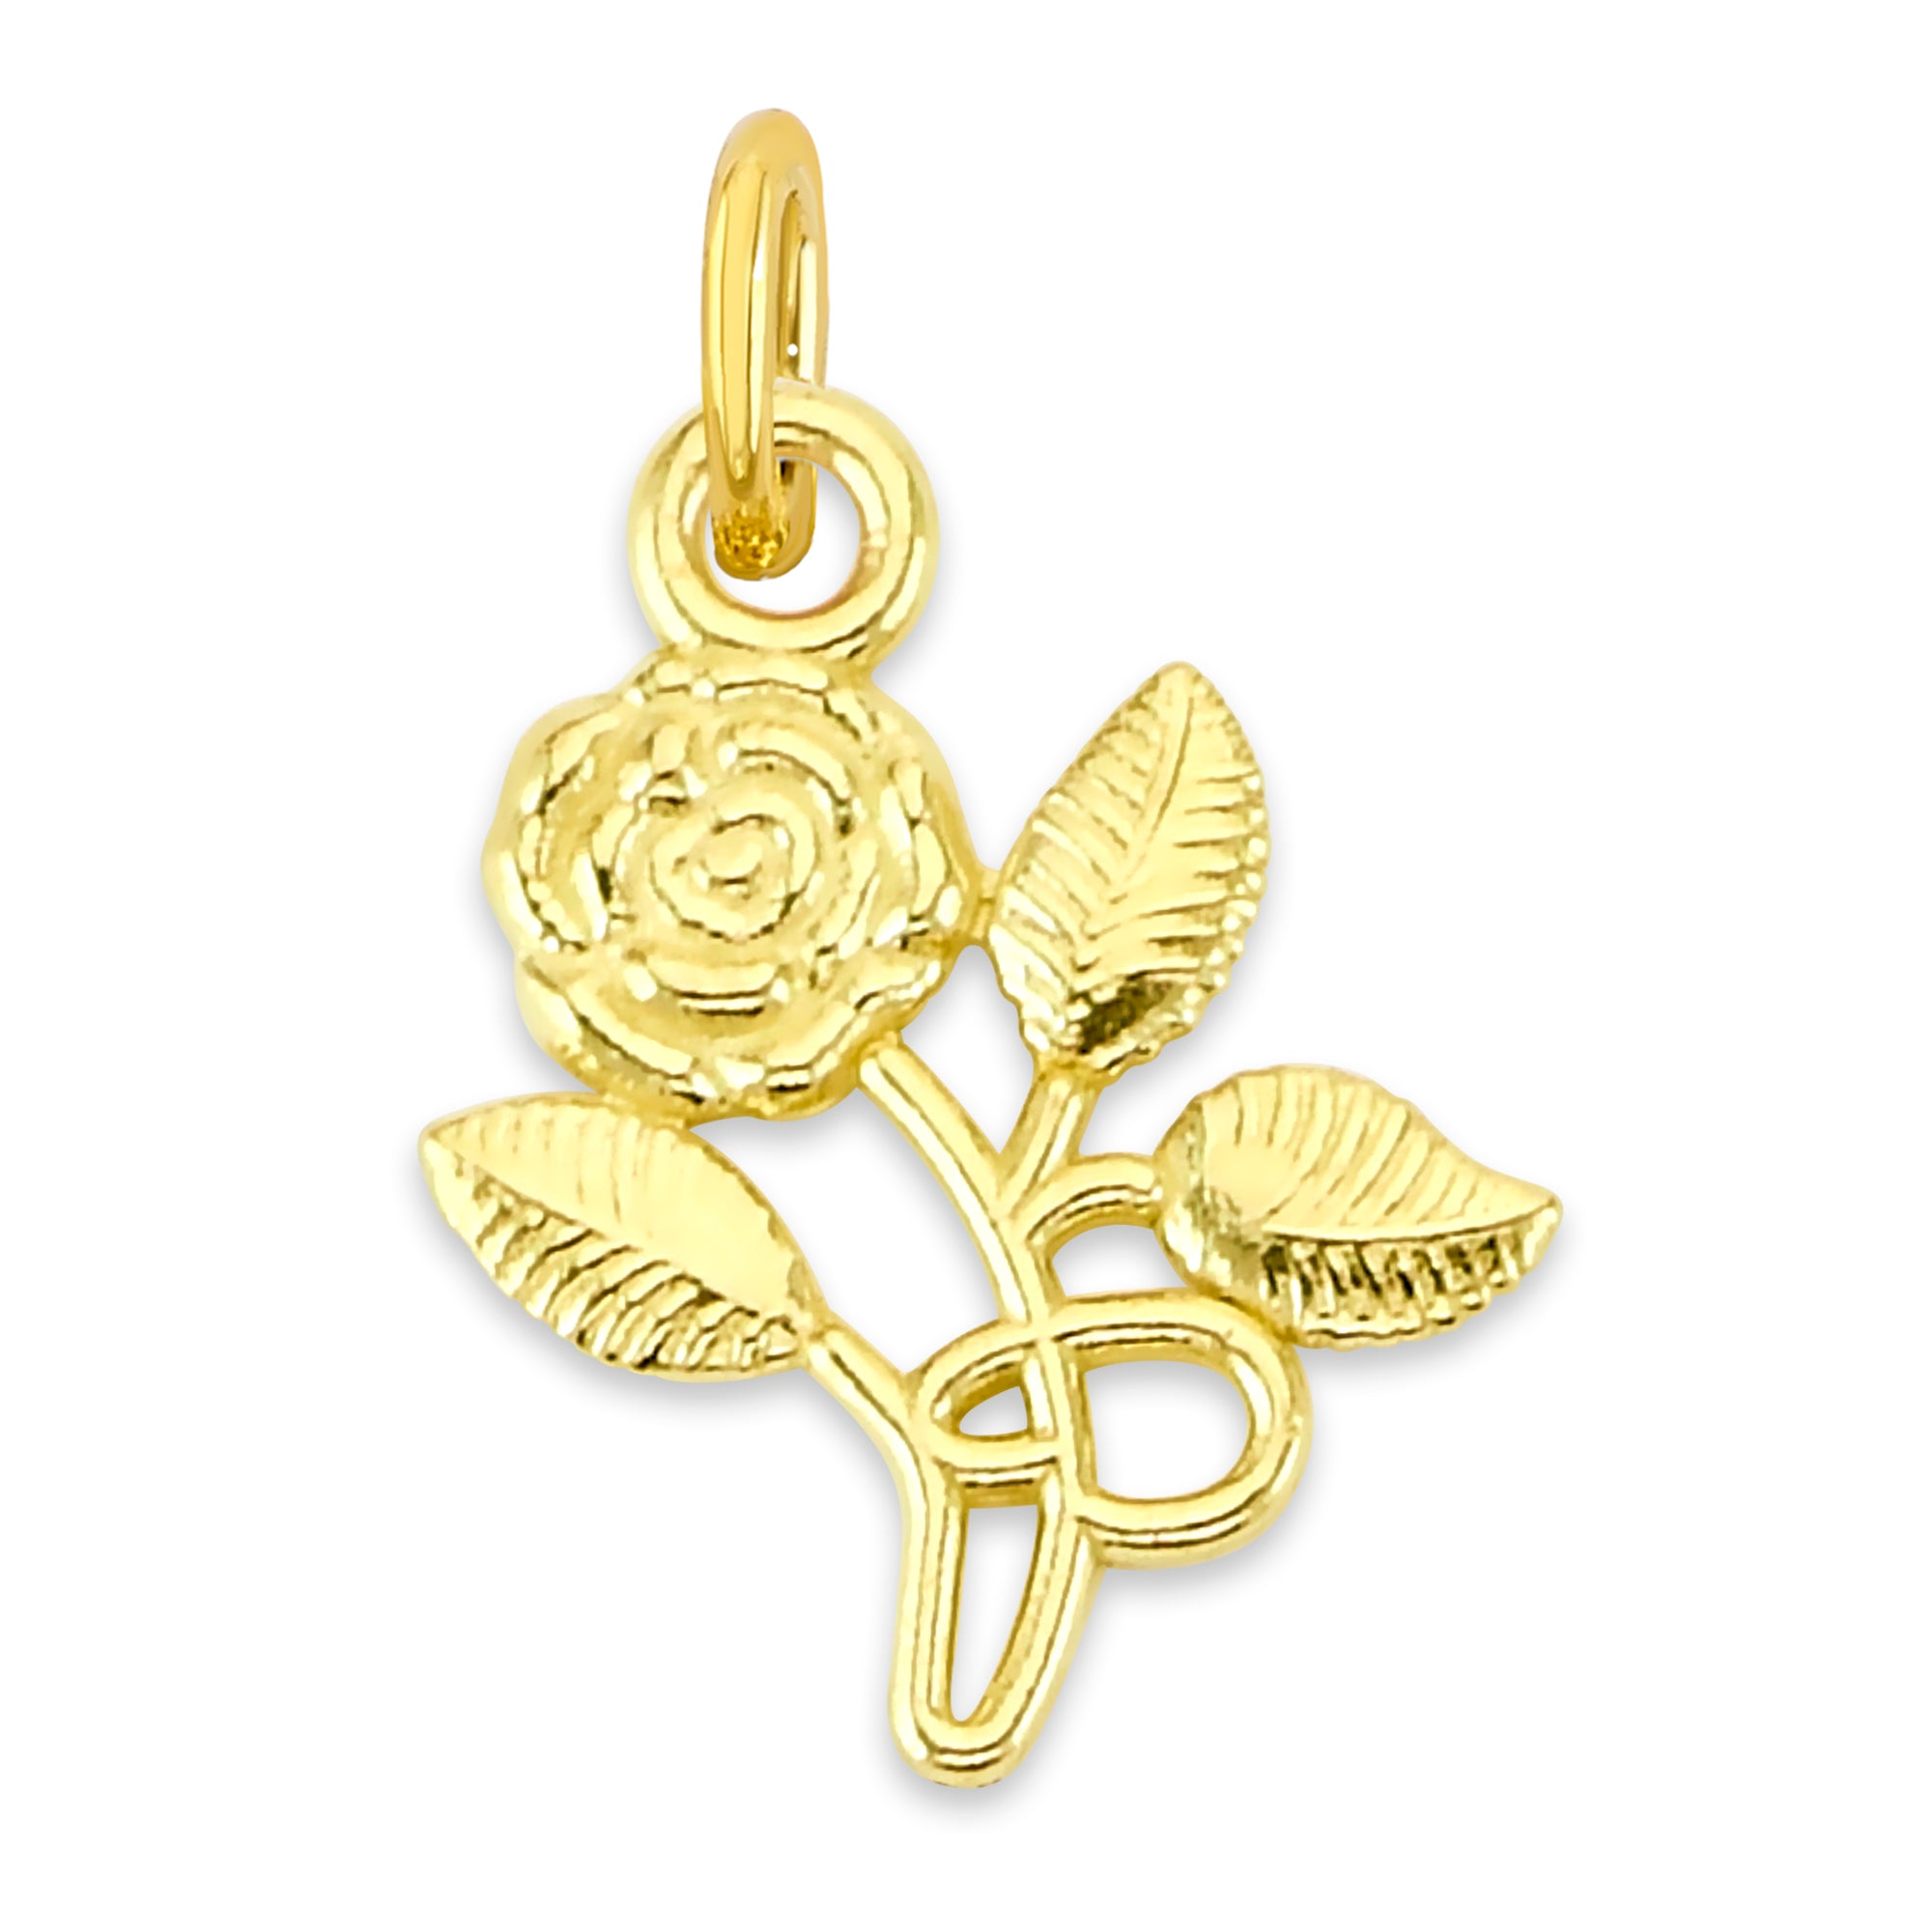 Solid Gold Hanging Rose Charm - 10k or 14k